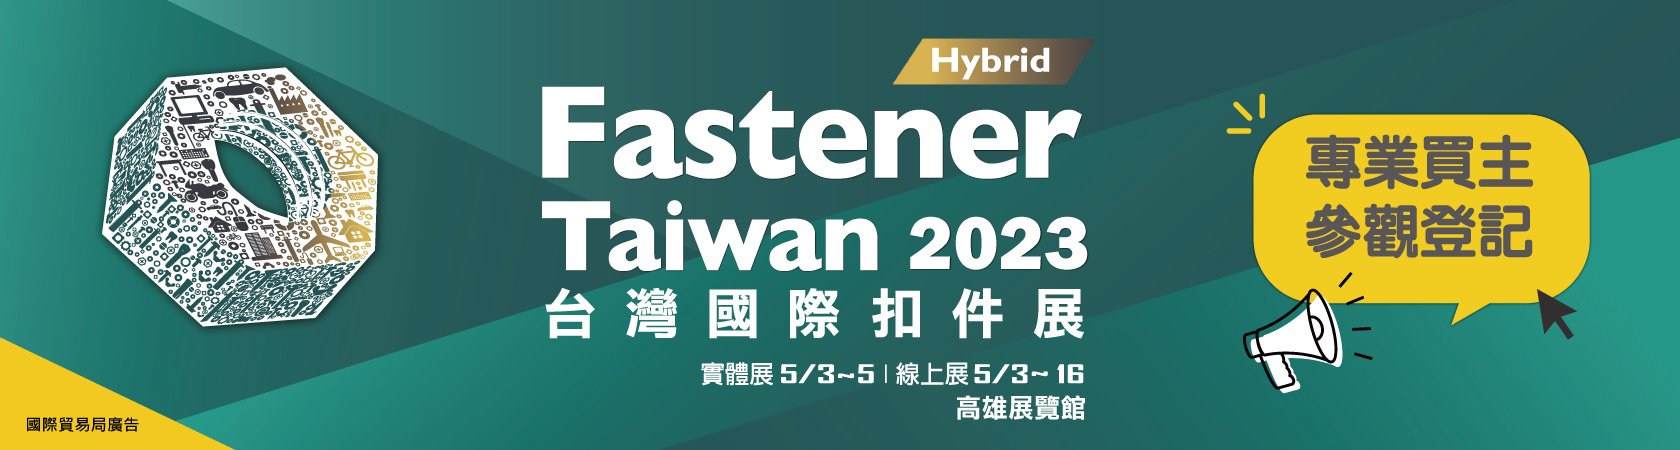 2023 台灣國際扣件展